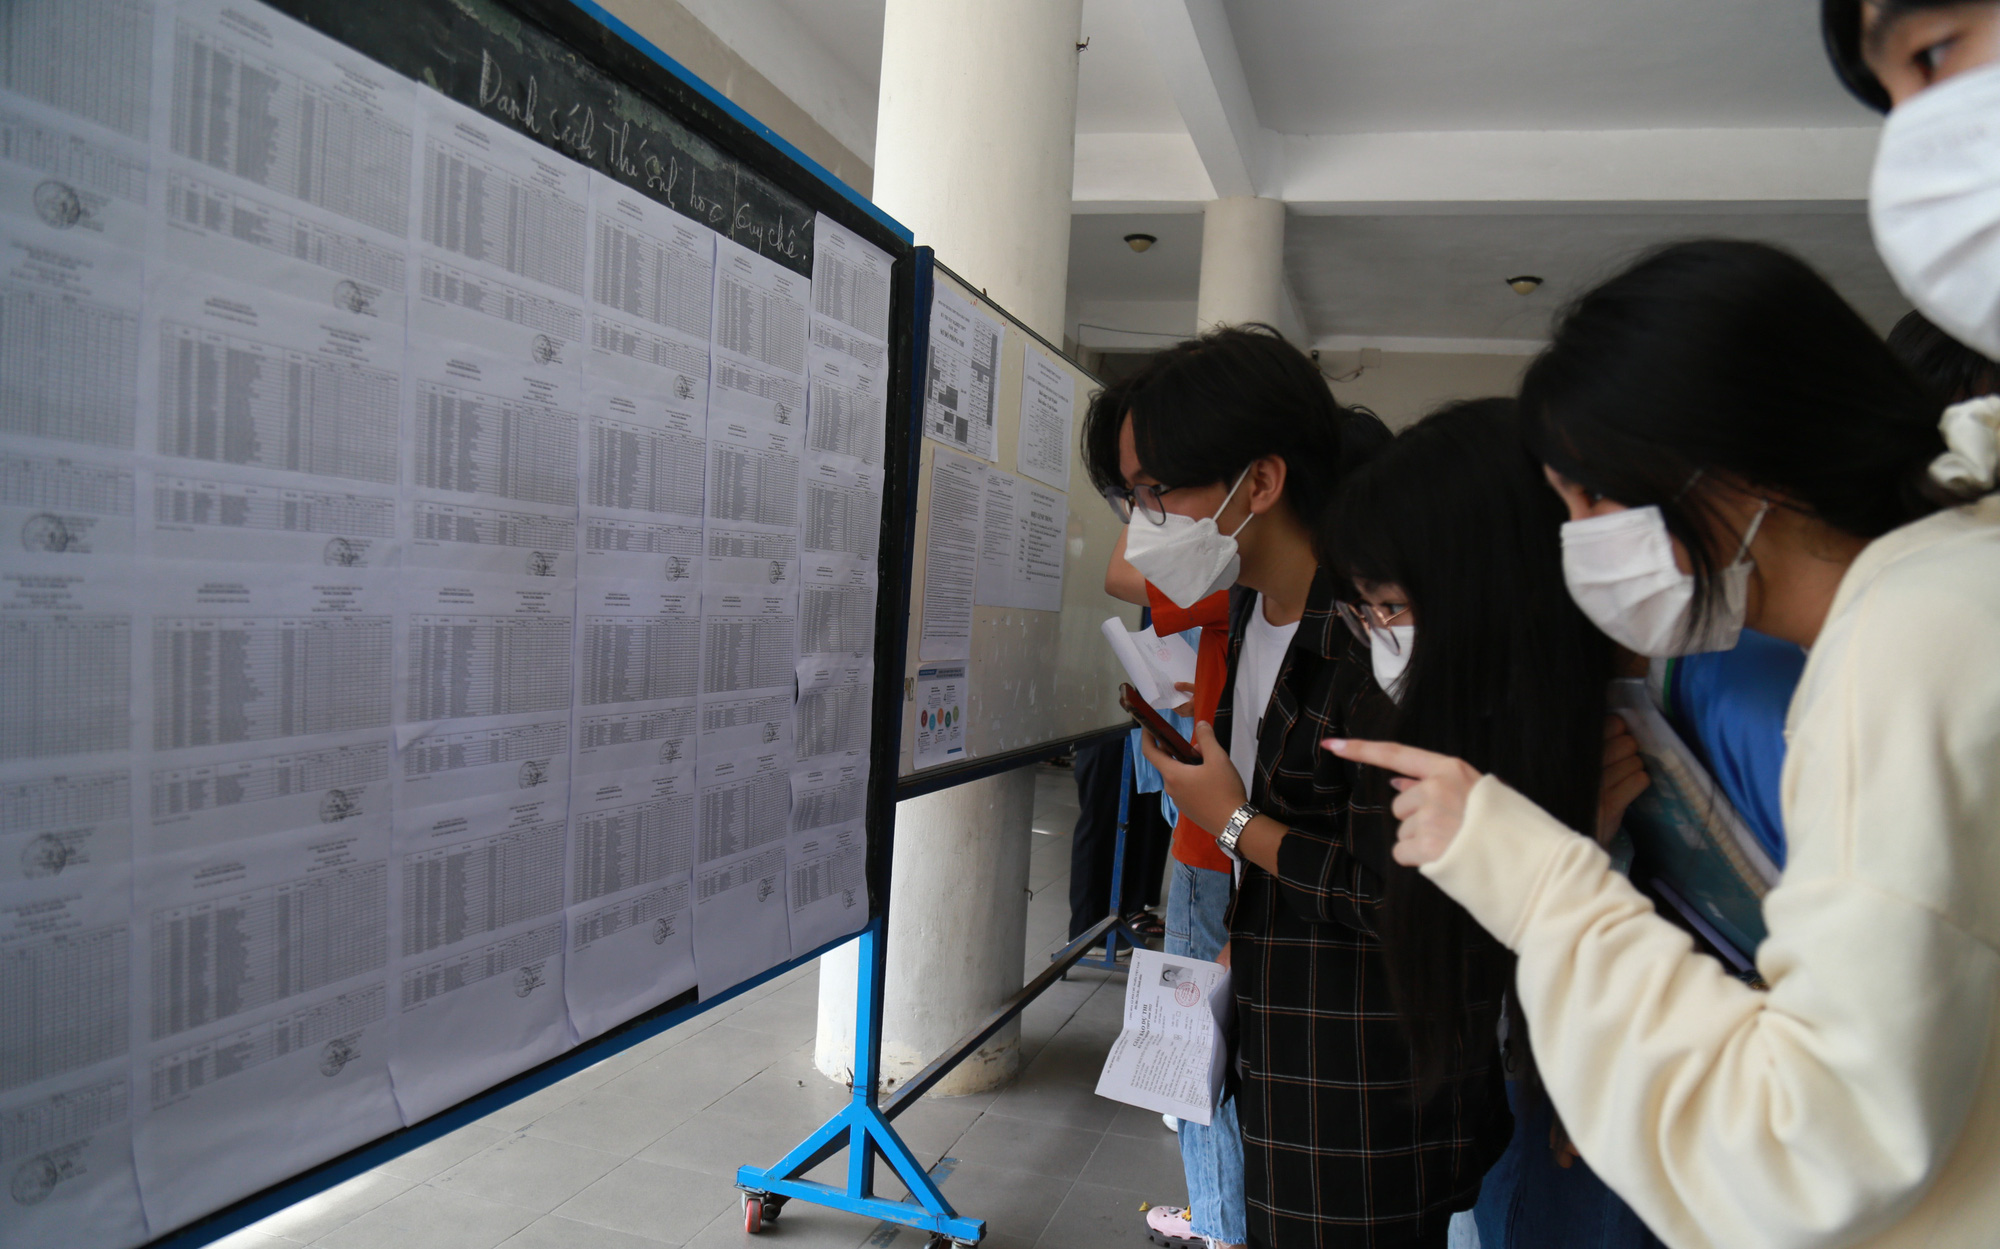 Hủy kết quả thi của thí sinh làm lộ đề toán tốt nghiệp tại Đà Nẵng